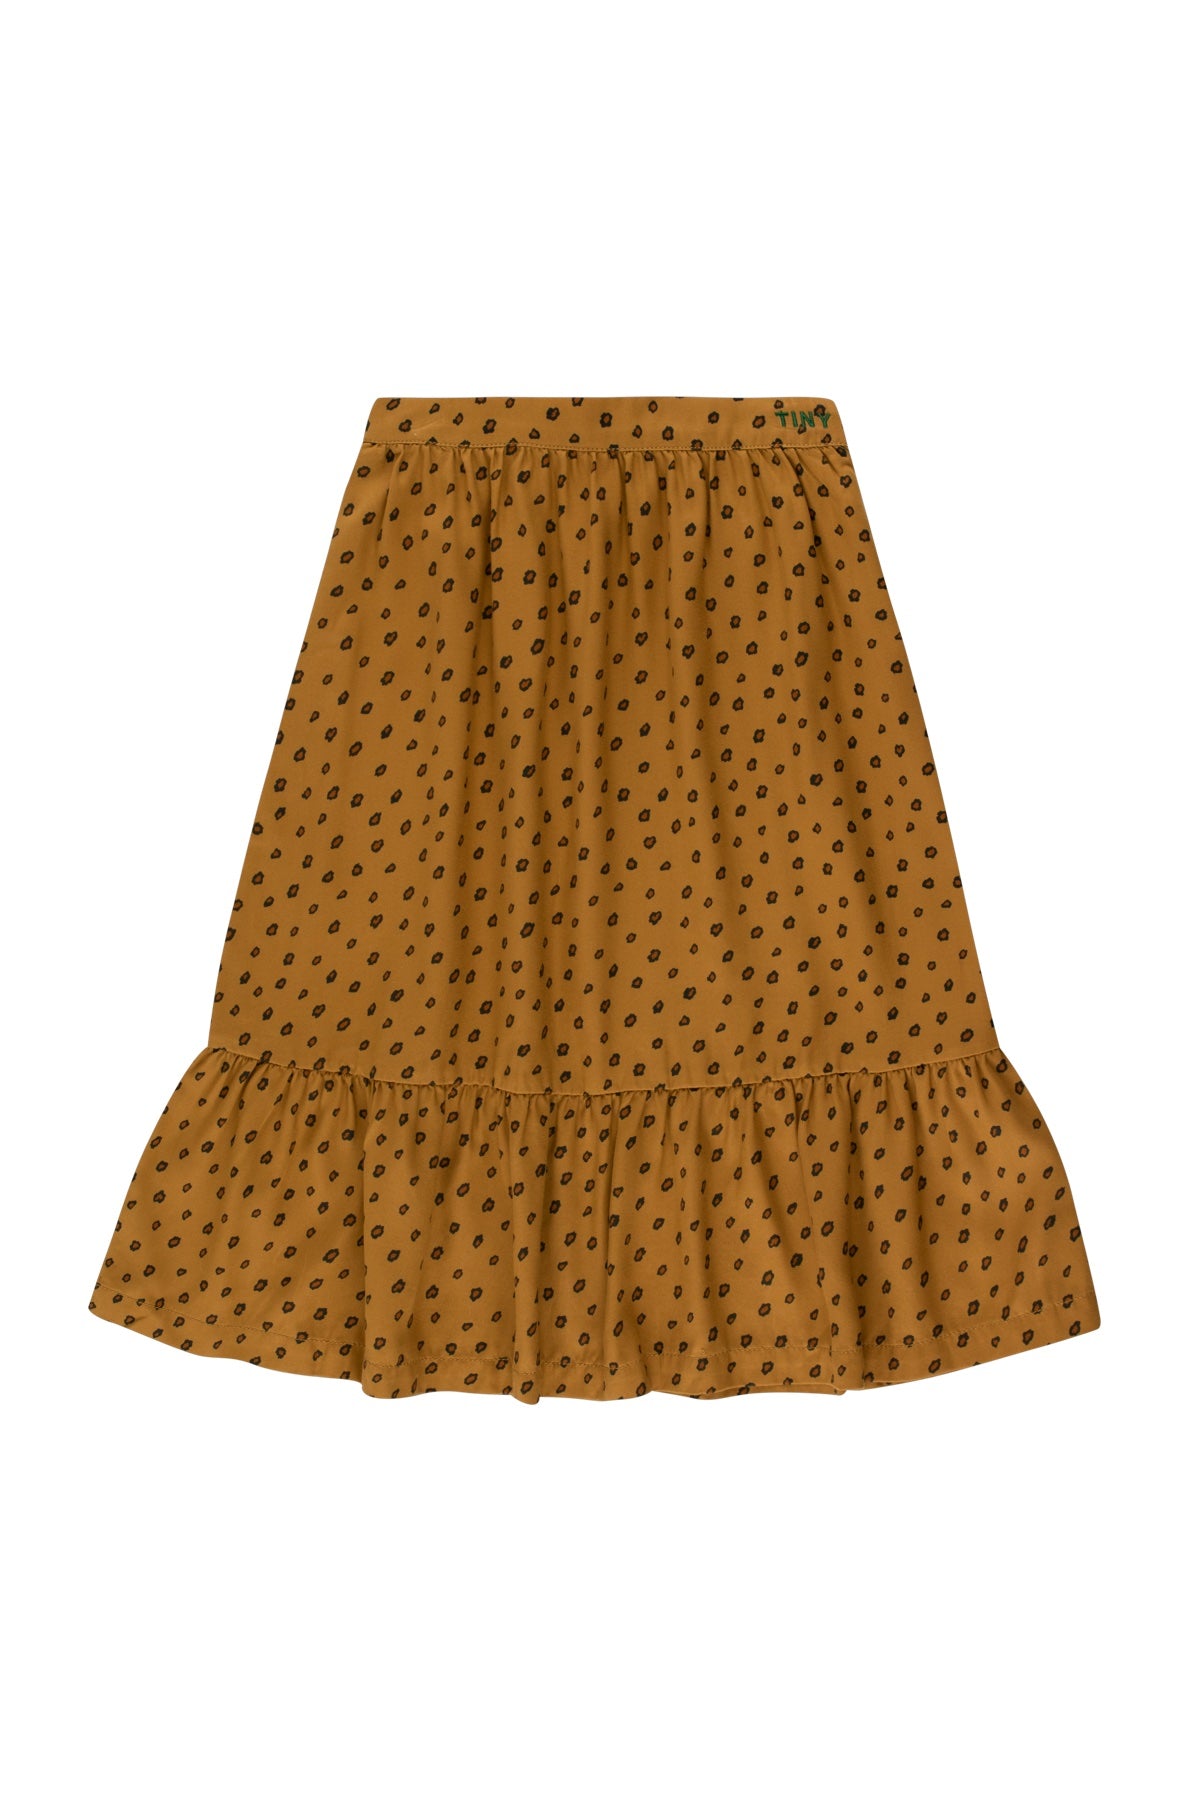 Tinycottons - Animal Print Long Skirt